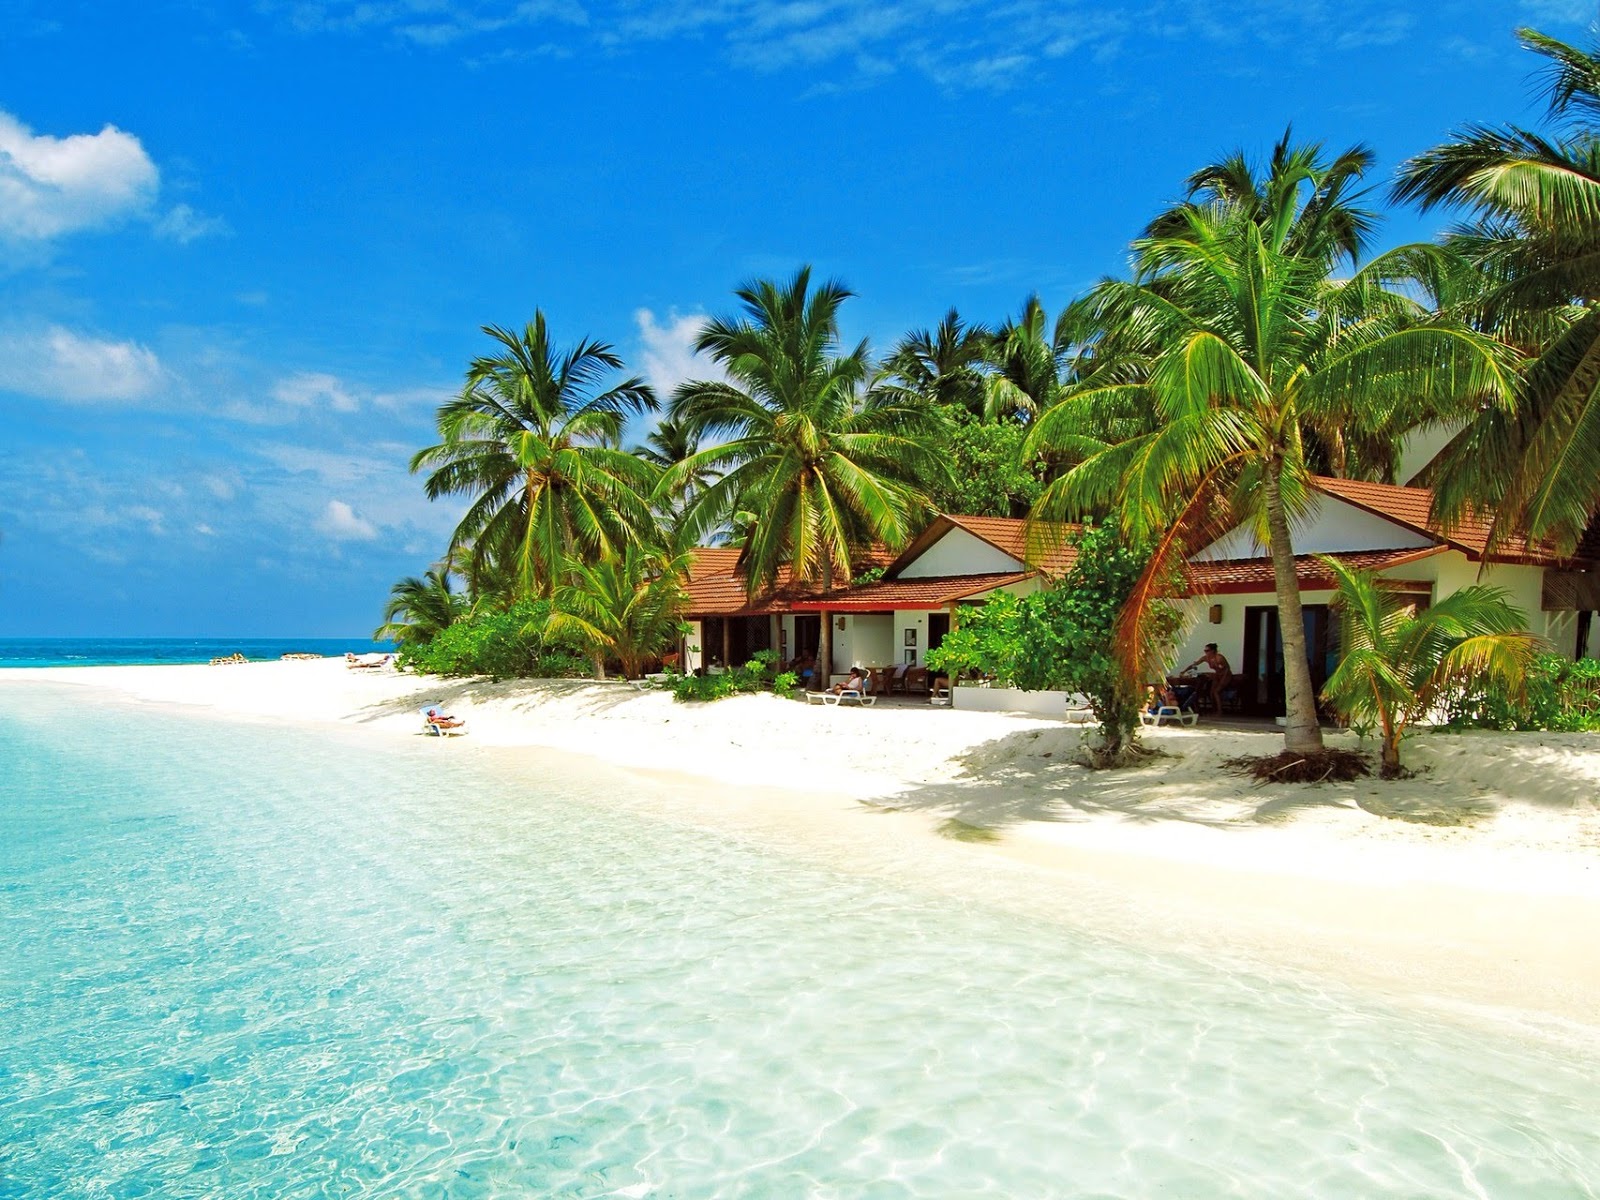 Diamonds Thudufushi'in fotoğrafı beyaz kum yüzey ile